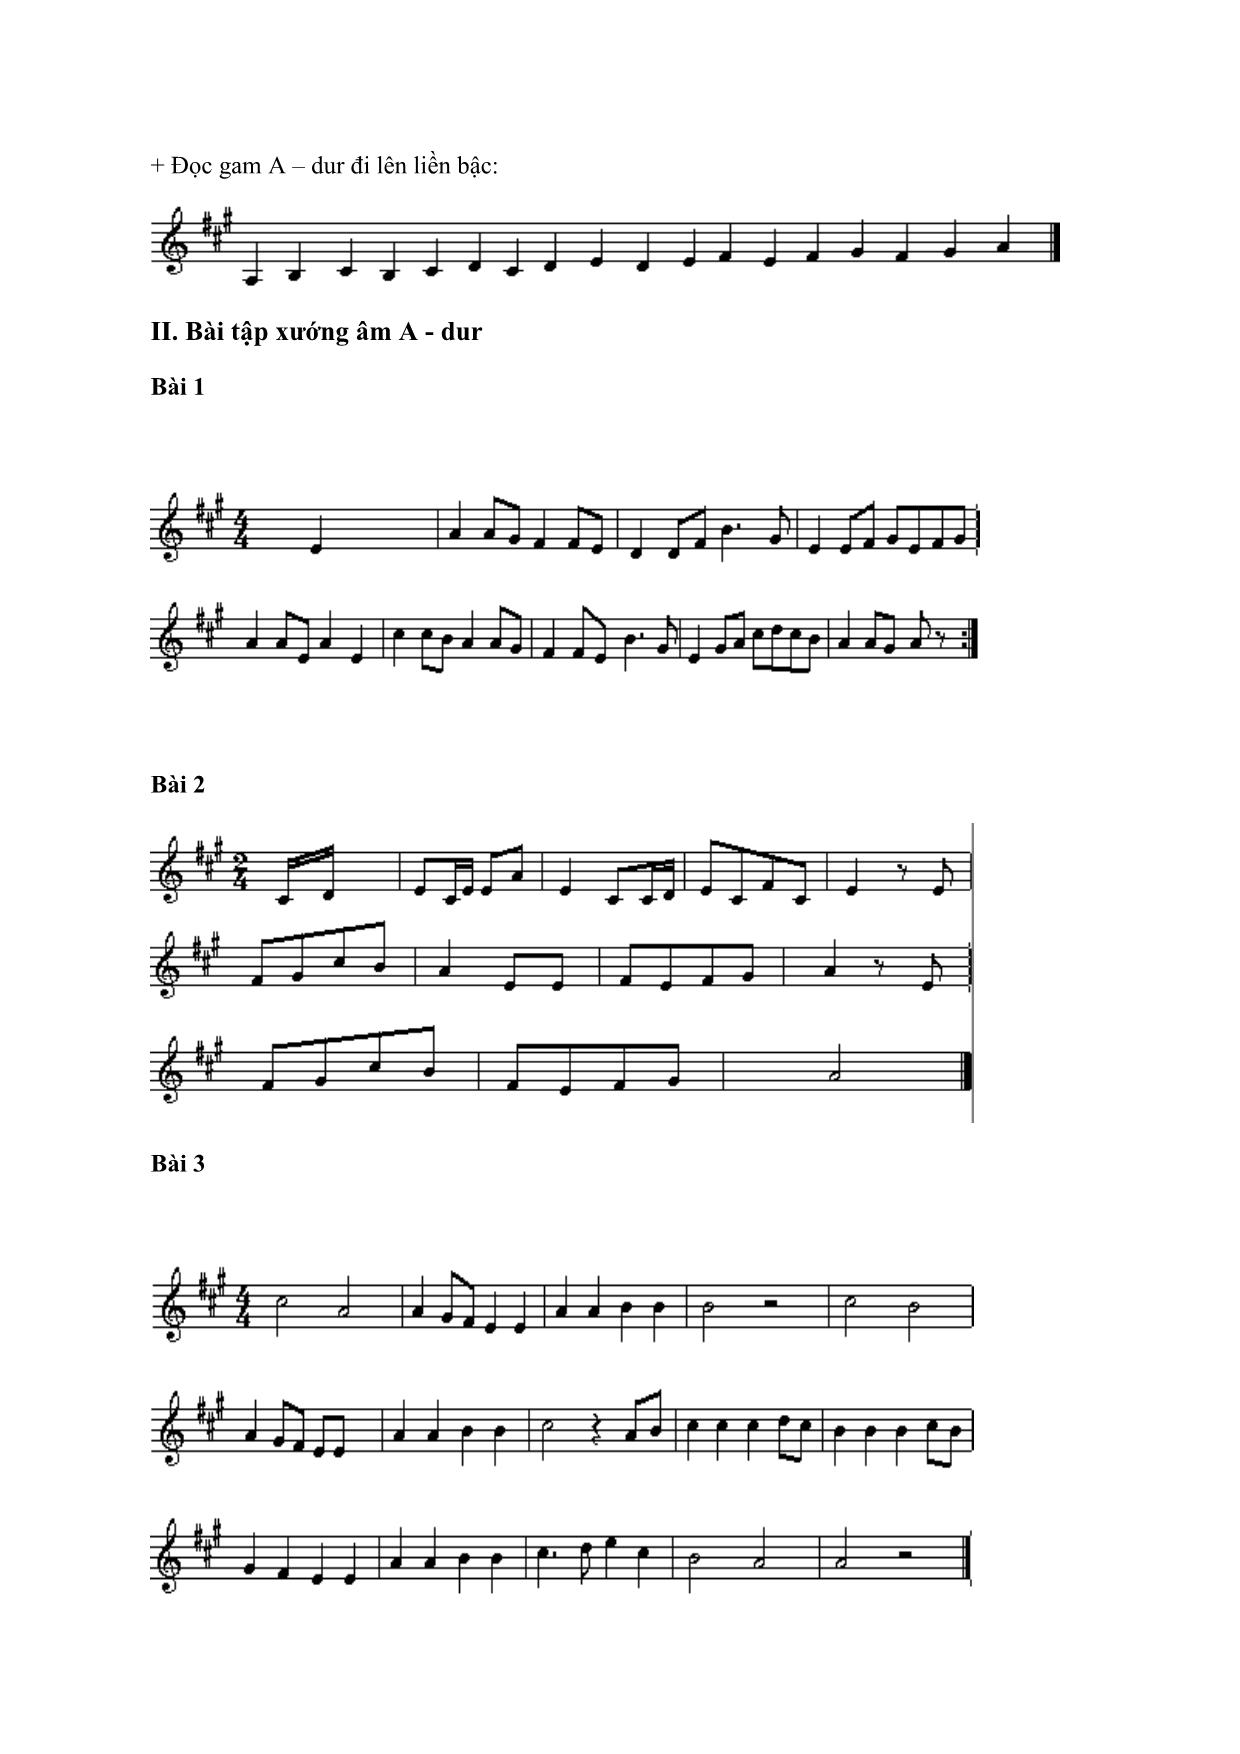 Giáo trình Thanh nhạc, organ, biểu diễn nhạc cụ truyền thống - Ký xướng âm 4 trang 7